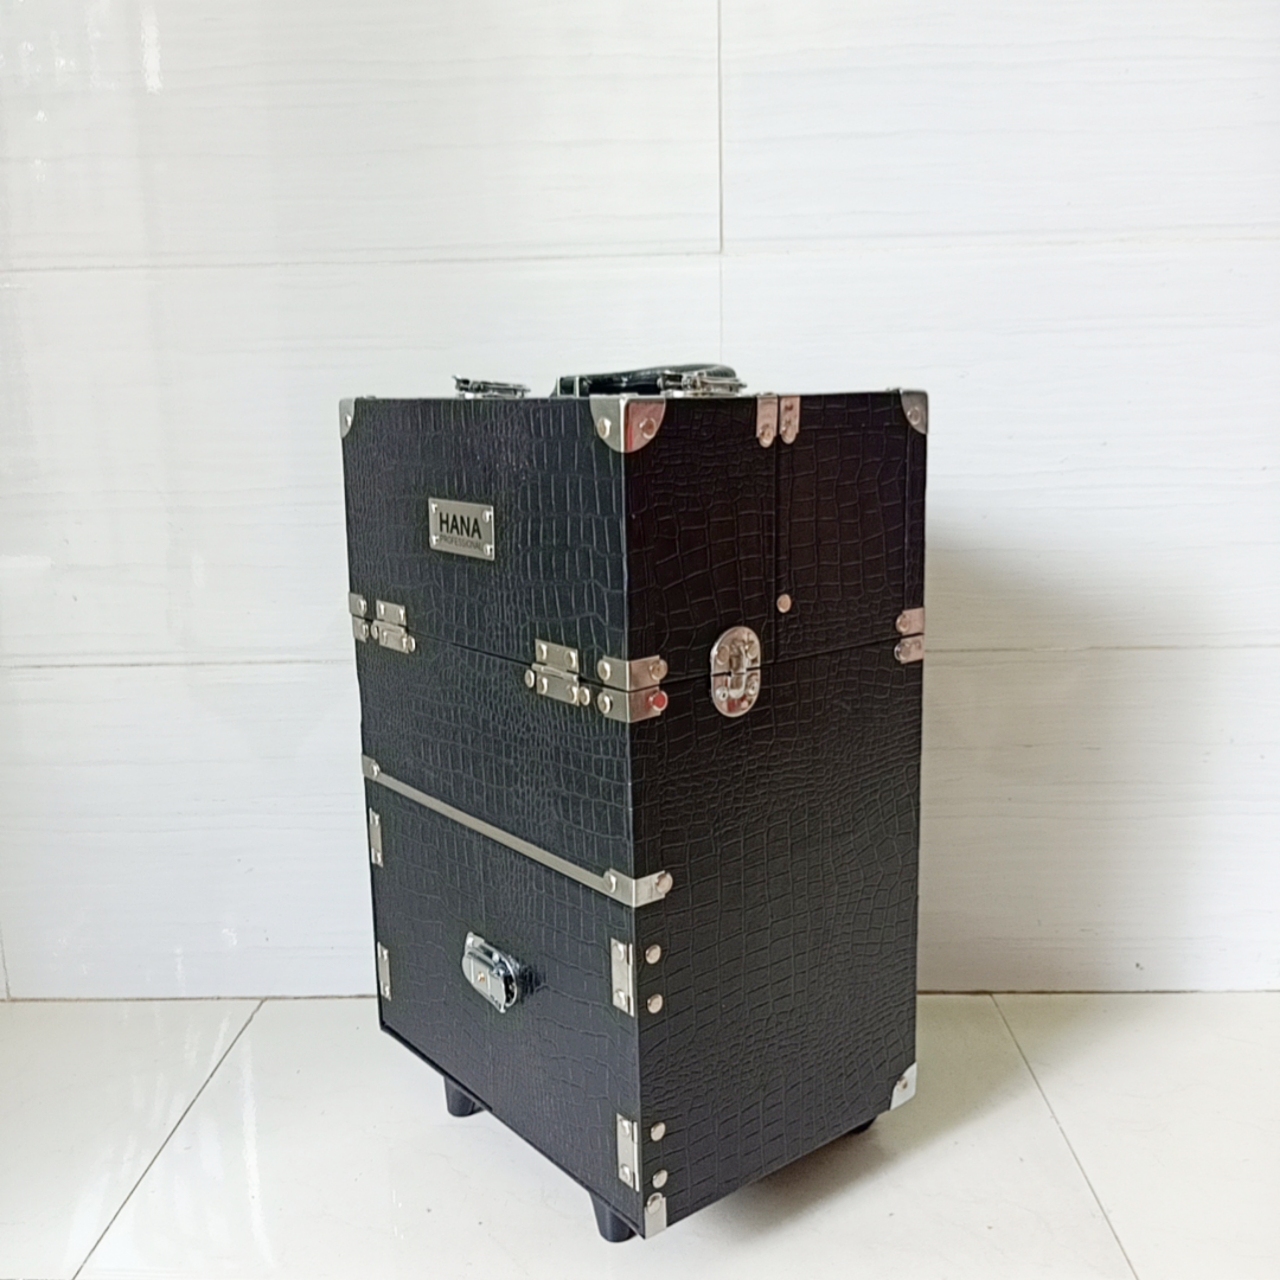 Loại 1 –Cốp vali mini cao cấp Hana Professional bọc góc, viền cạnh inox đựng dụng cụ trang điểm, make up, phun xăm, nối mi chuyên nghiệp size 30x22x44 cm 